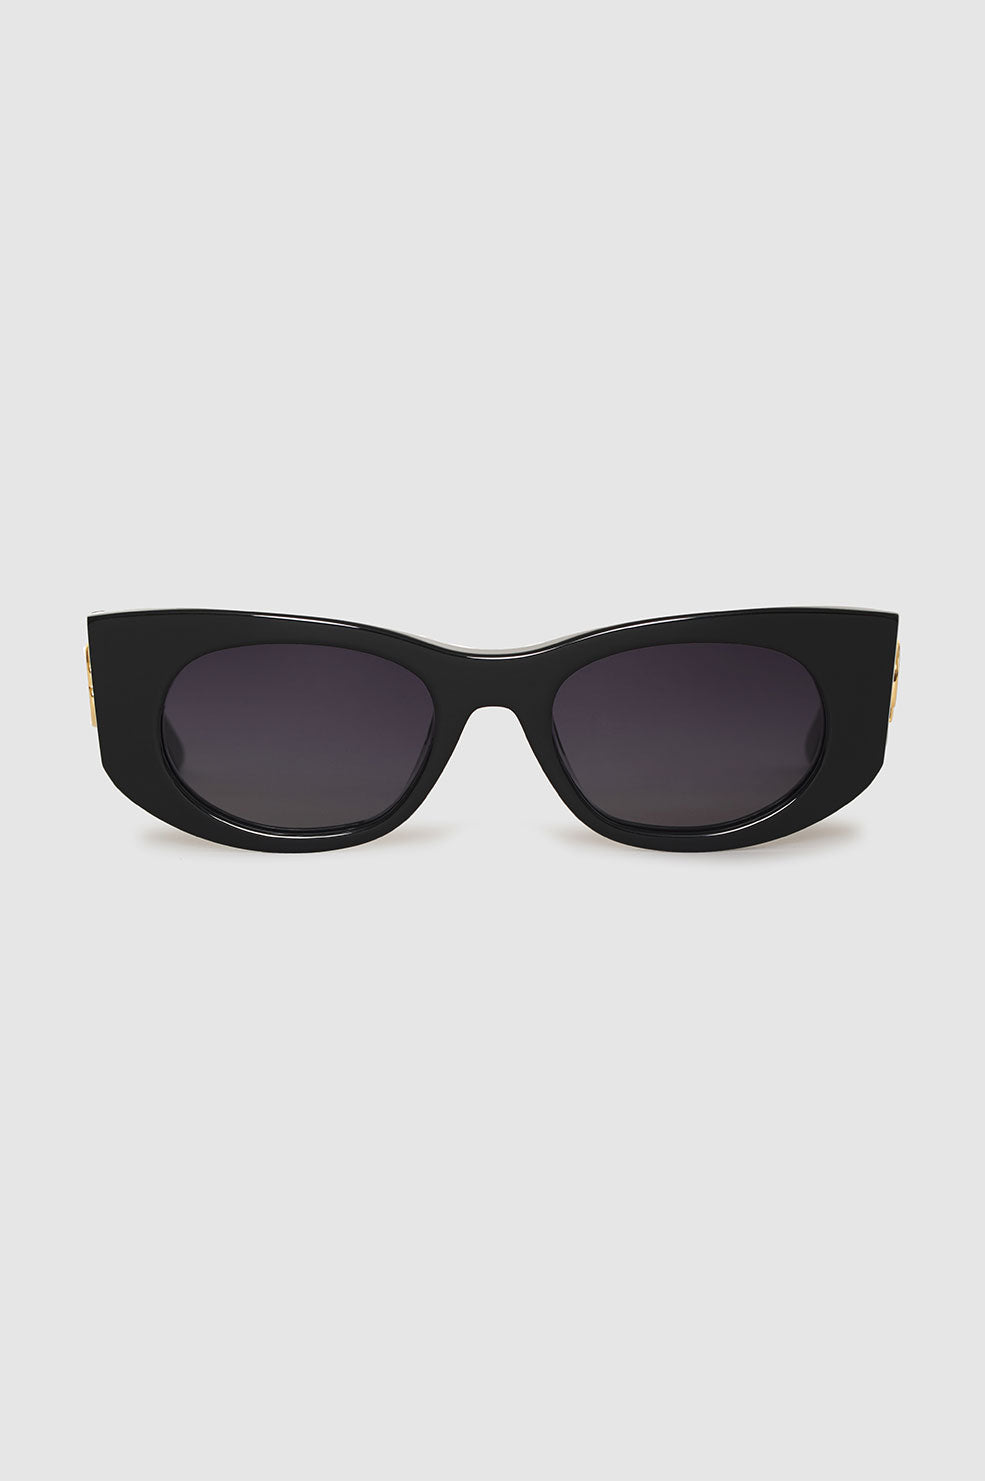 Madrid Sunglasses  product image